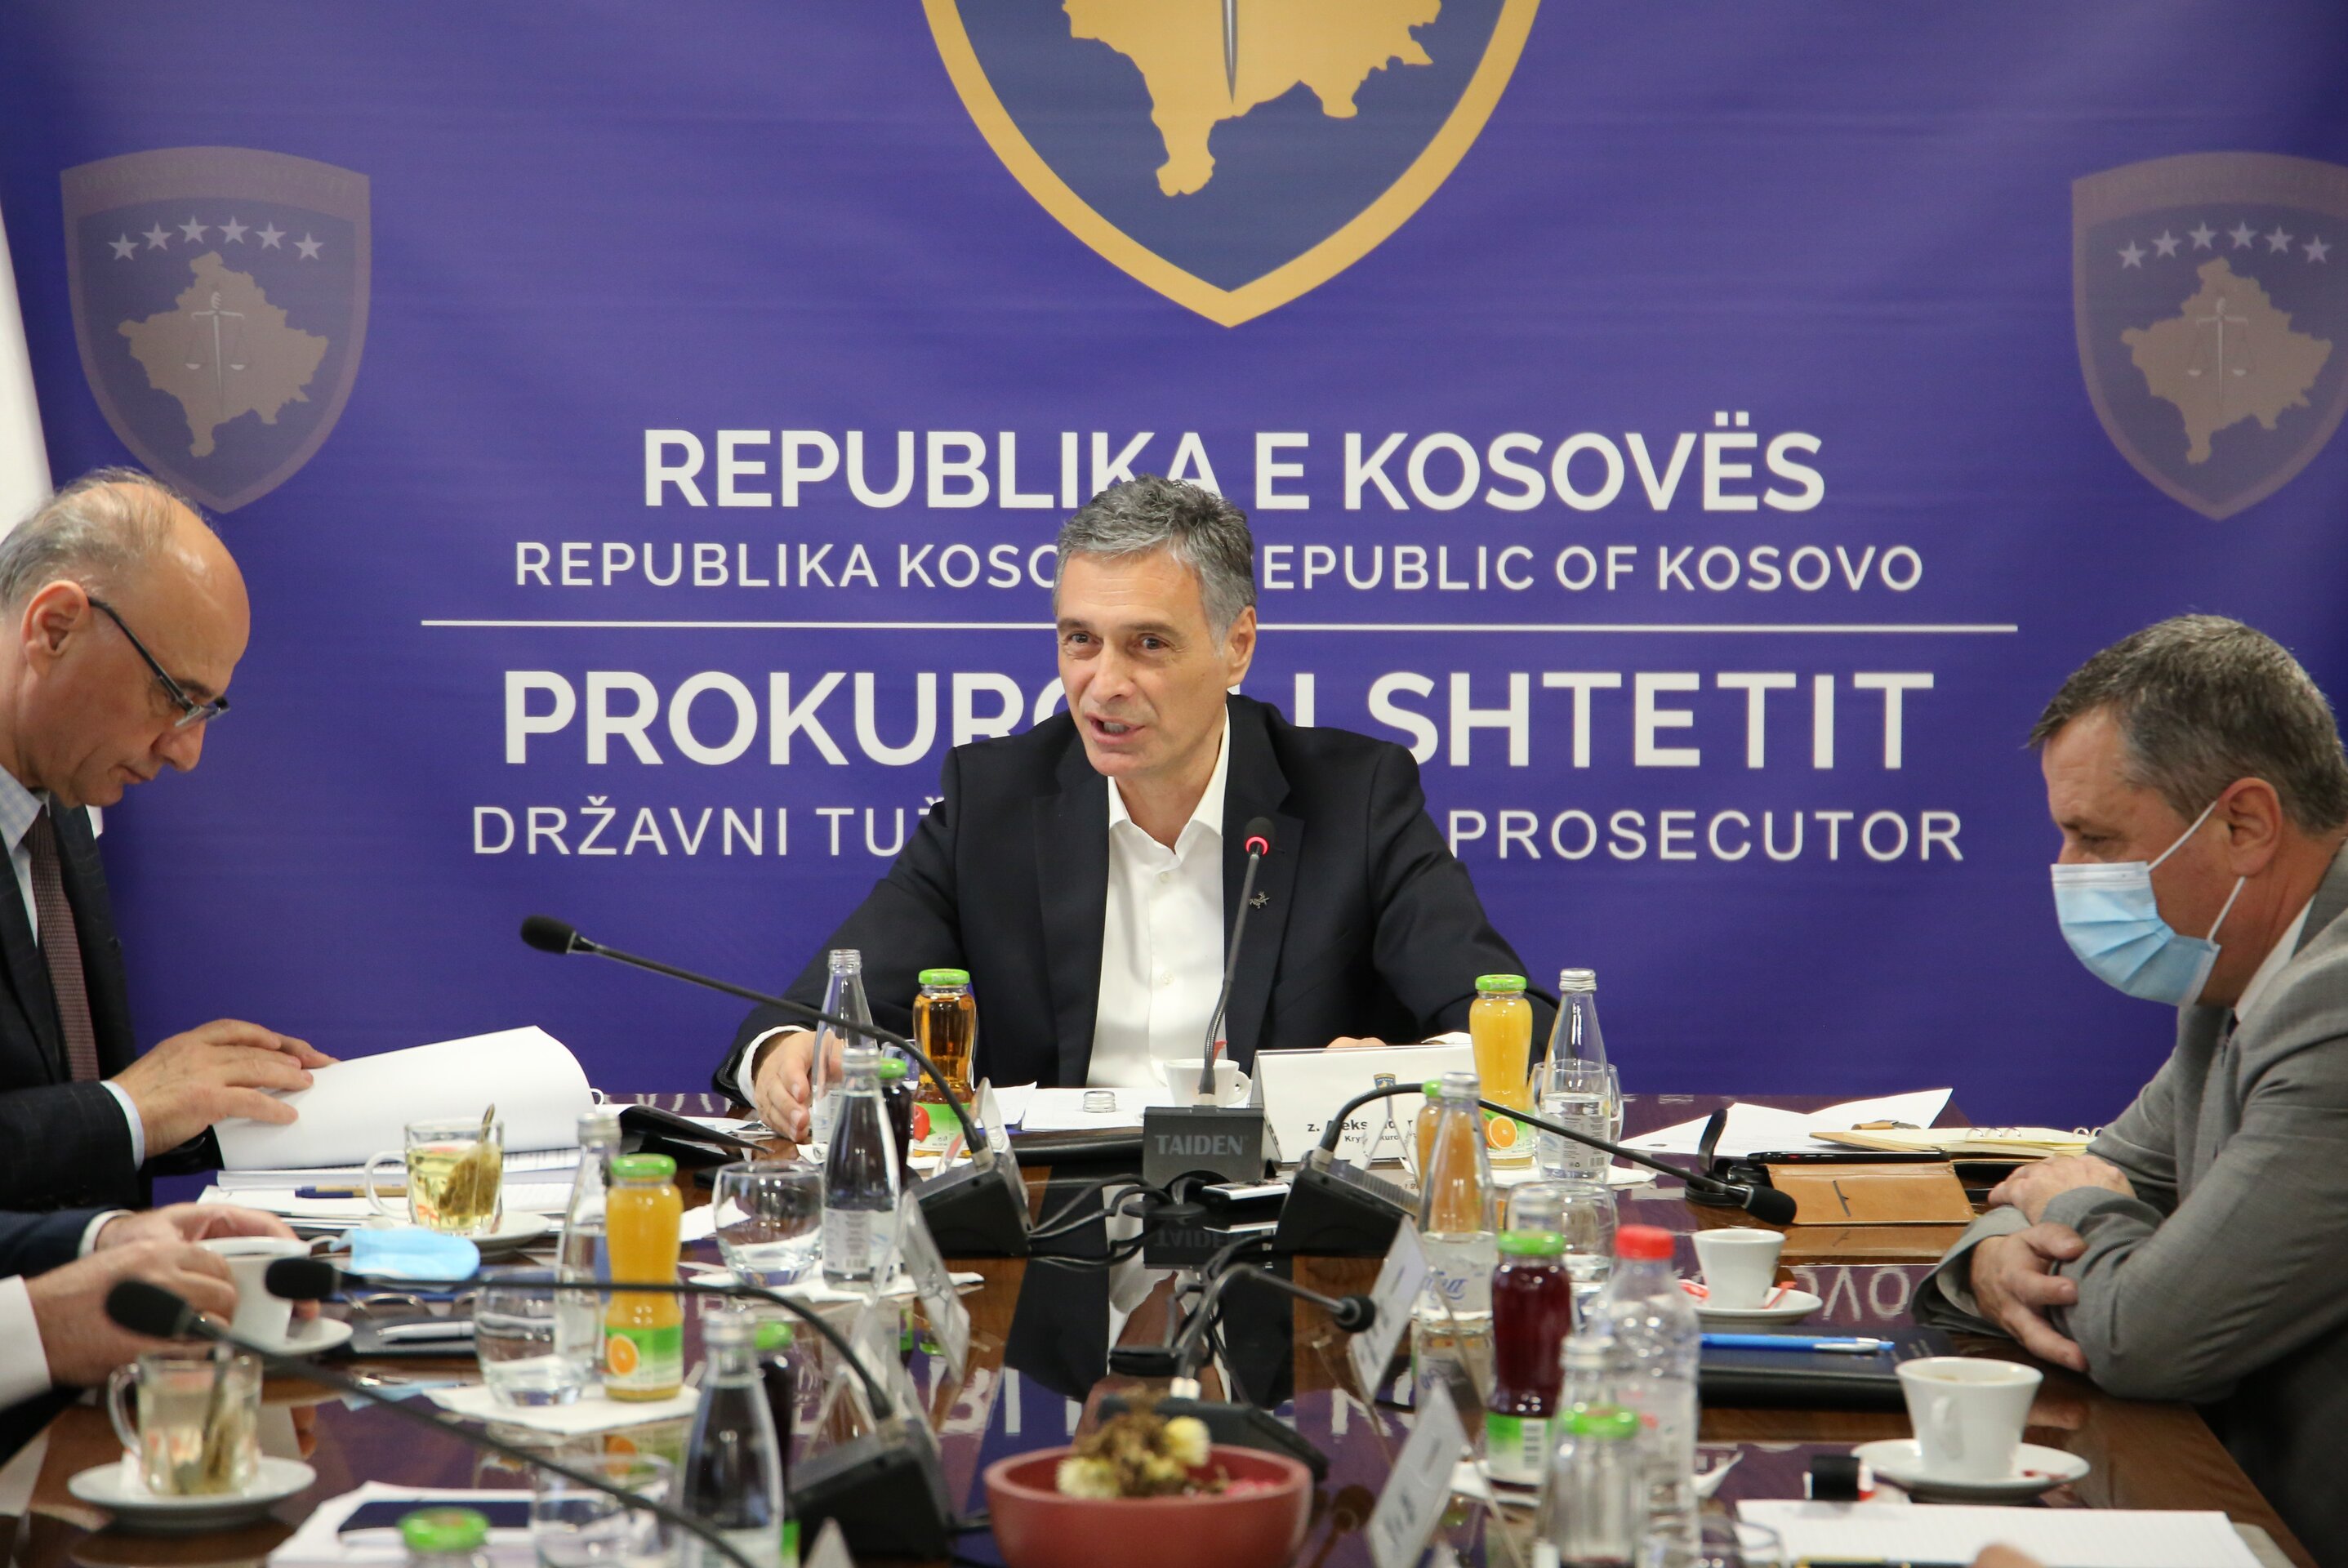 Kryeprokurori i Shtetit mbajti takimin e kolegjiumit të parë për vitin 2022 me kryeprokurorët e prokurorive të Republikës së Kosovës